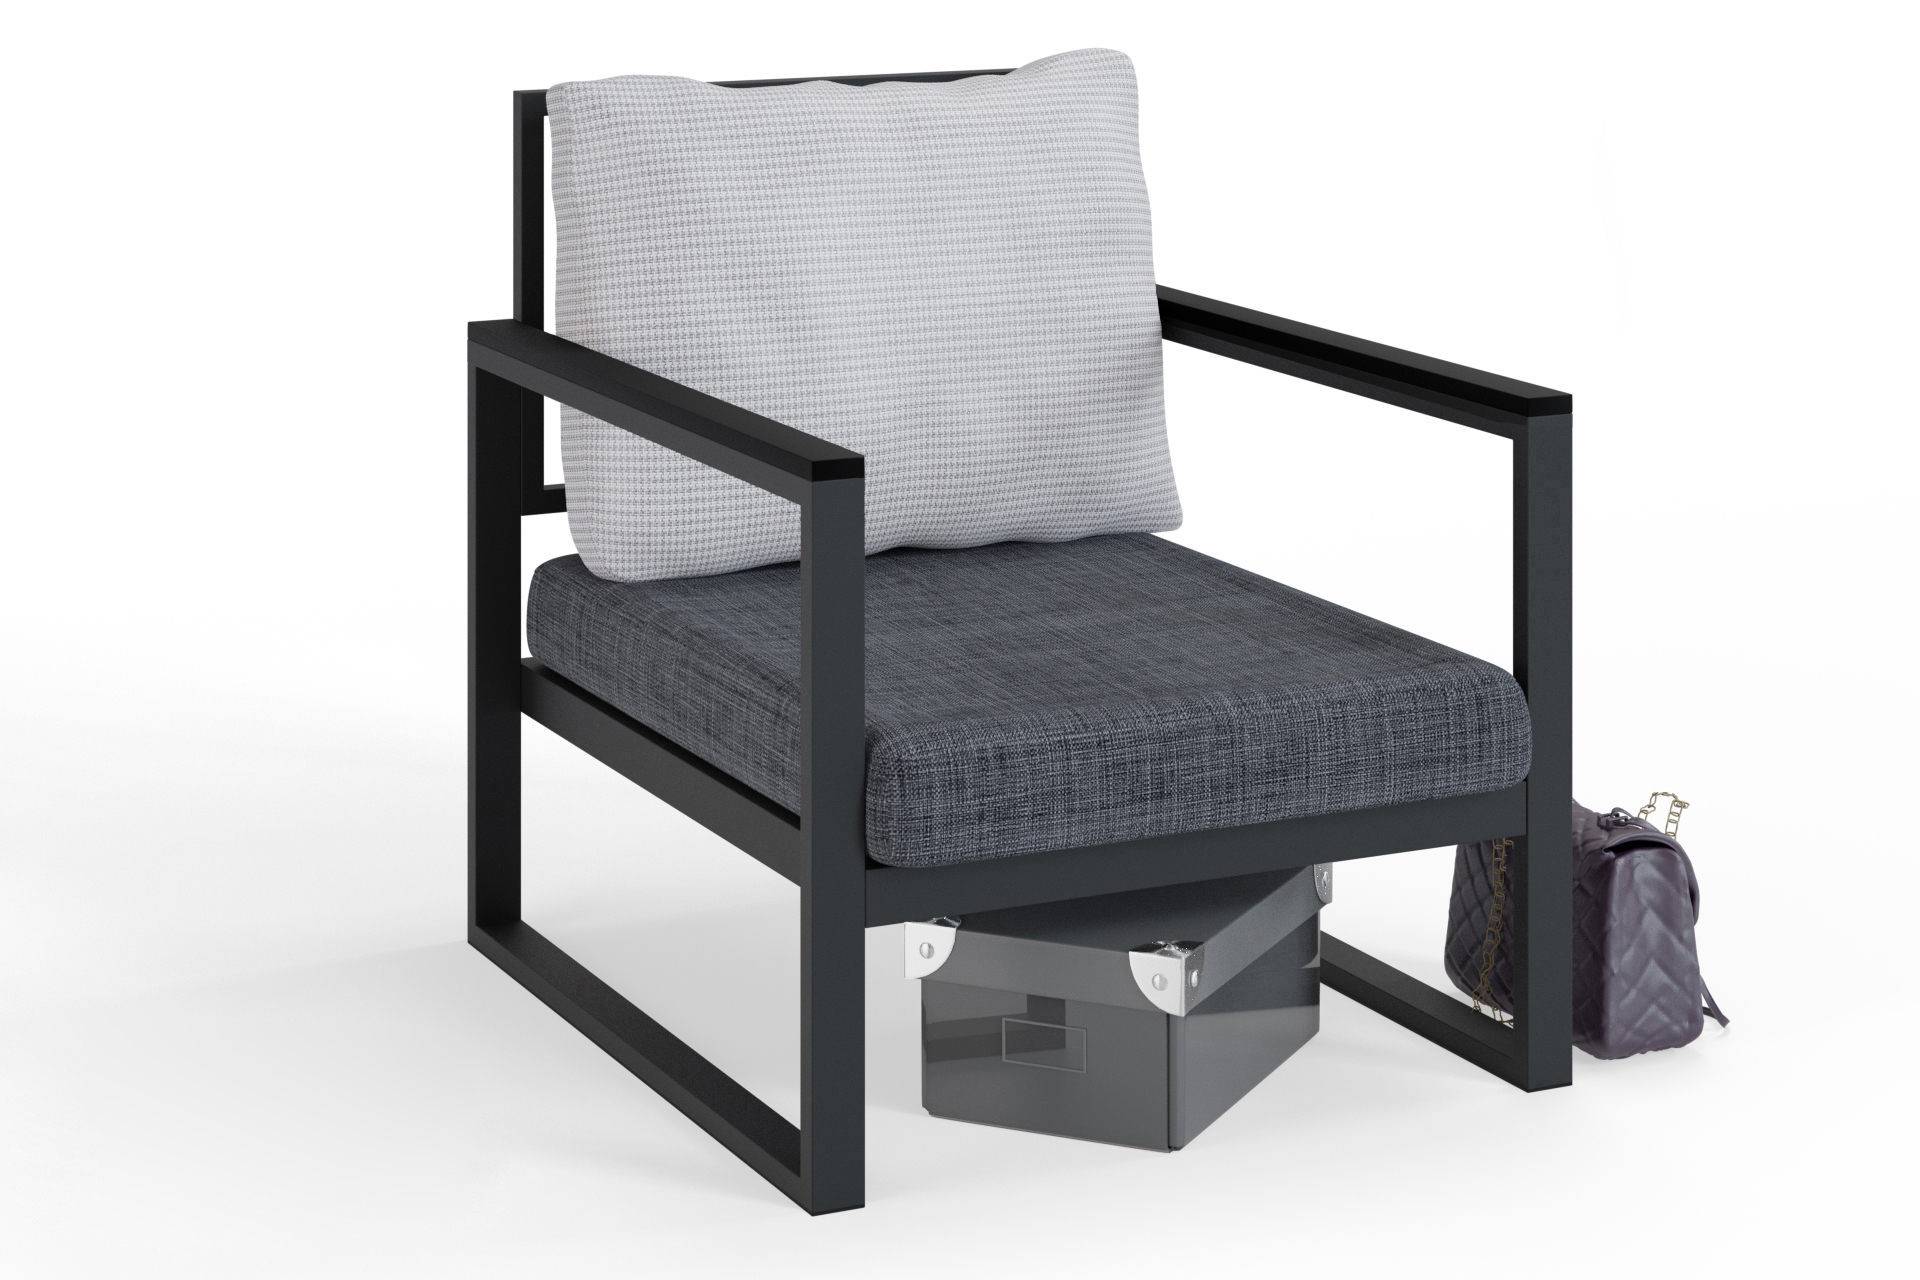 Moderne fauteuil Omer van zwart metaal en stof, grijze zitting en kussen met grijs houndstoothpatroon